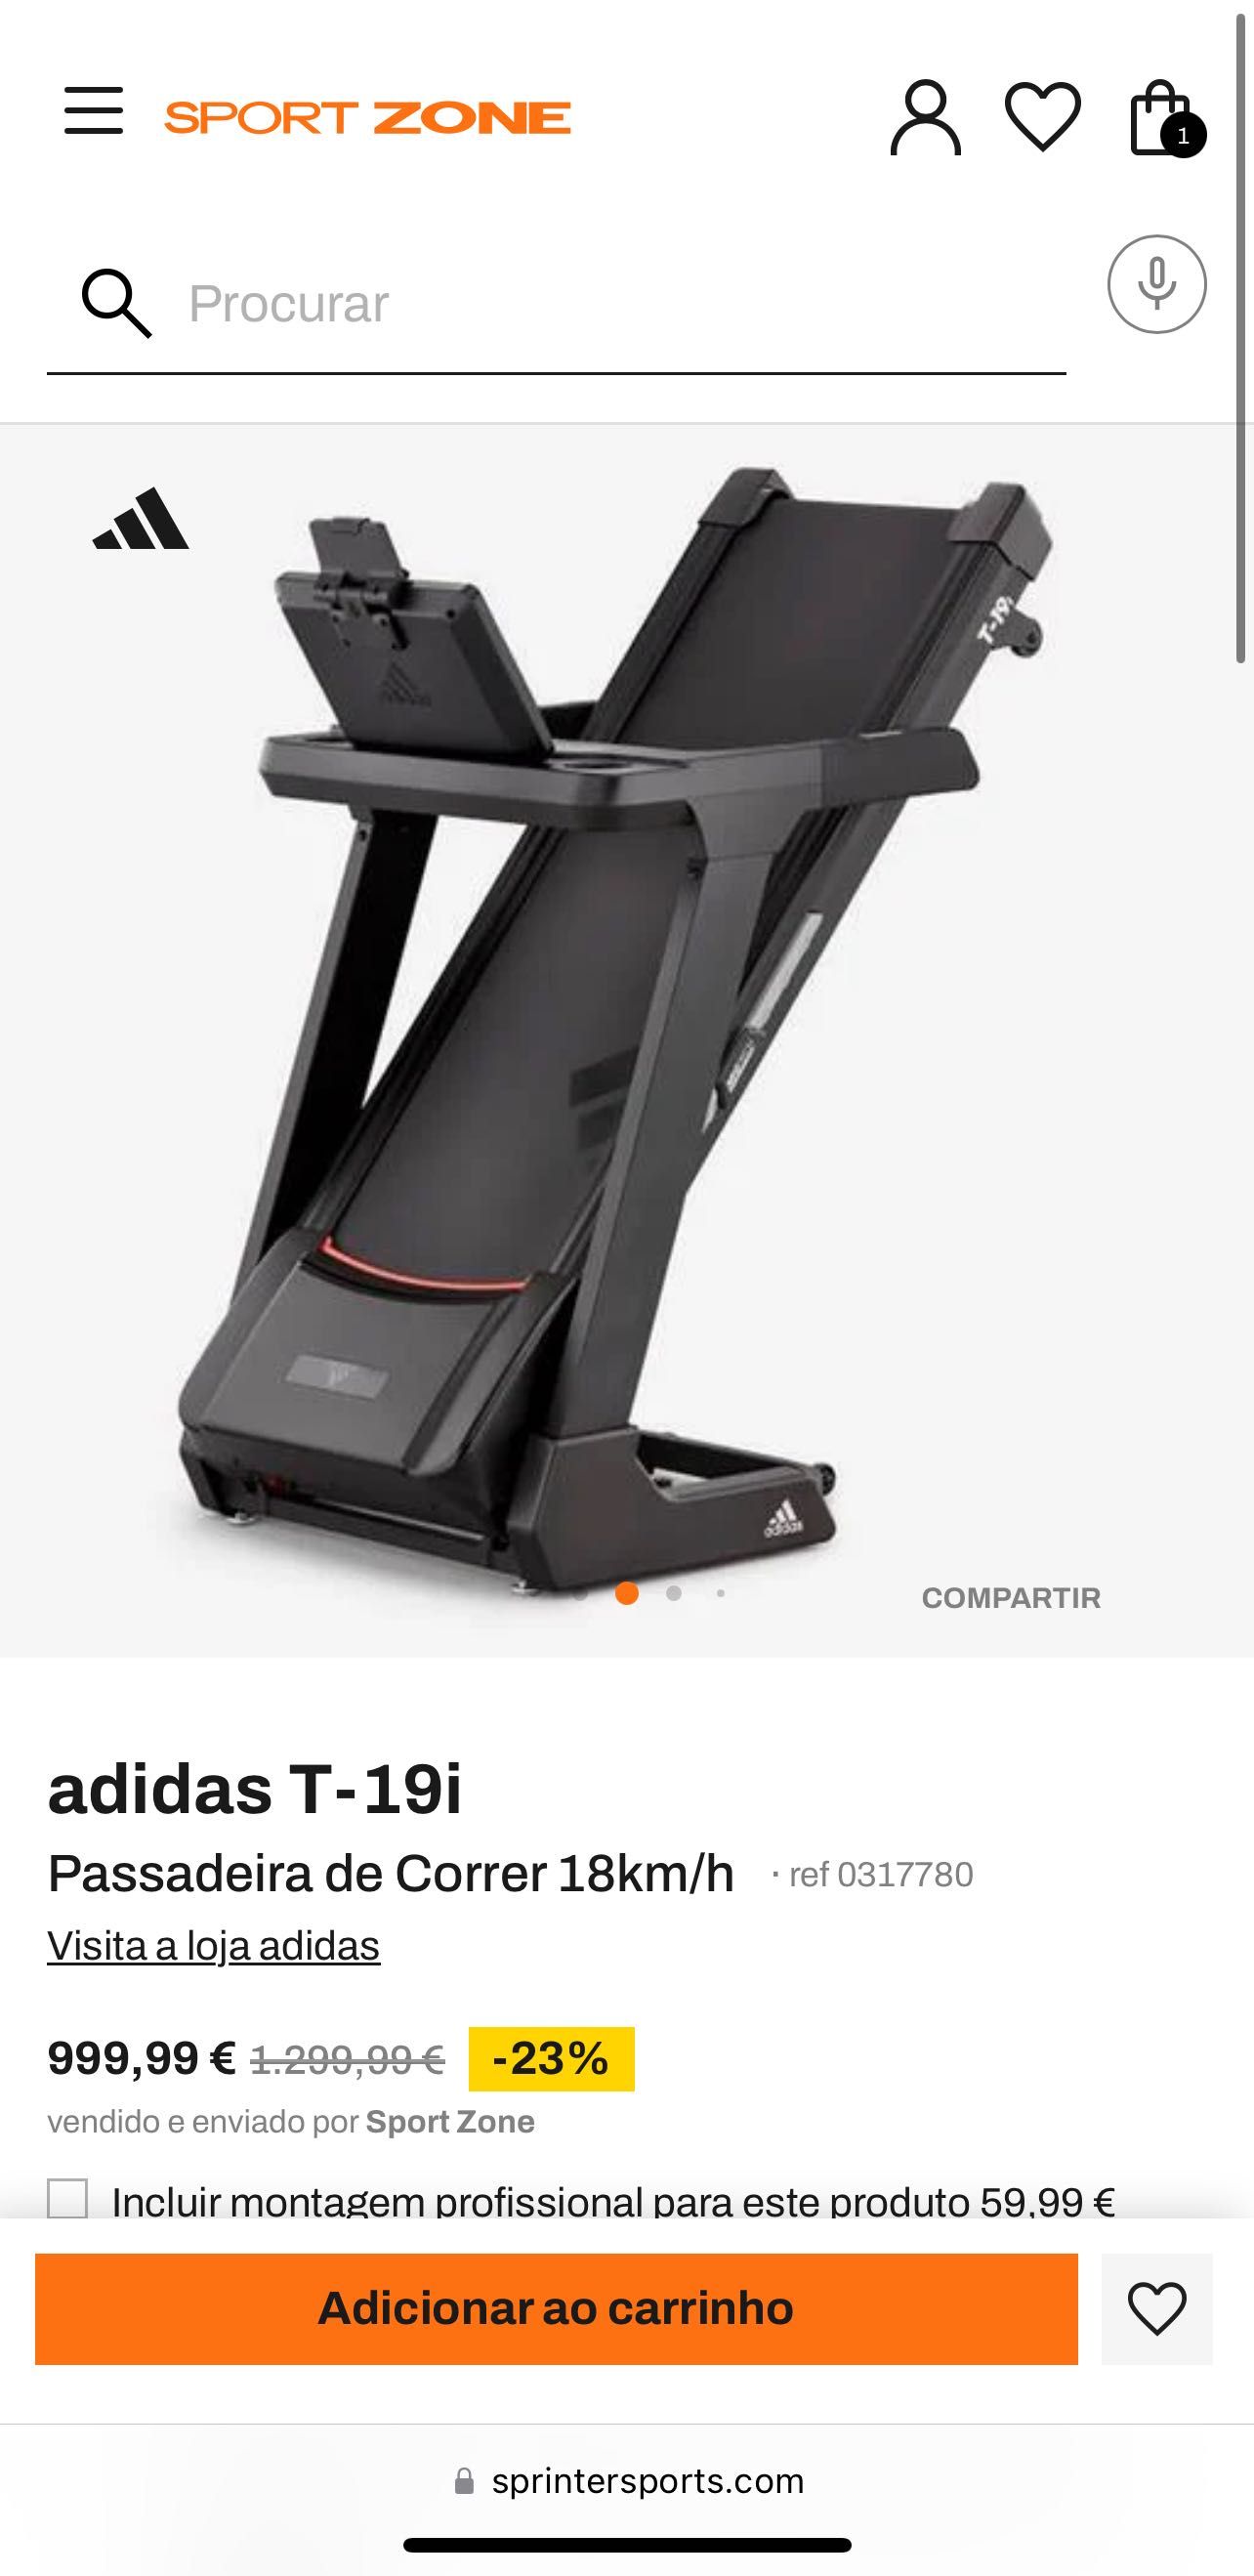 Adidas T-19i Treadmill, raramente usado. excelente estado.